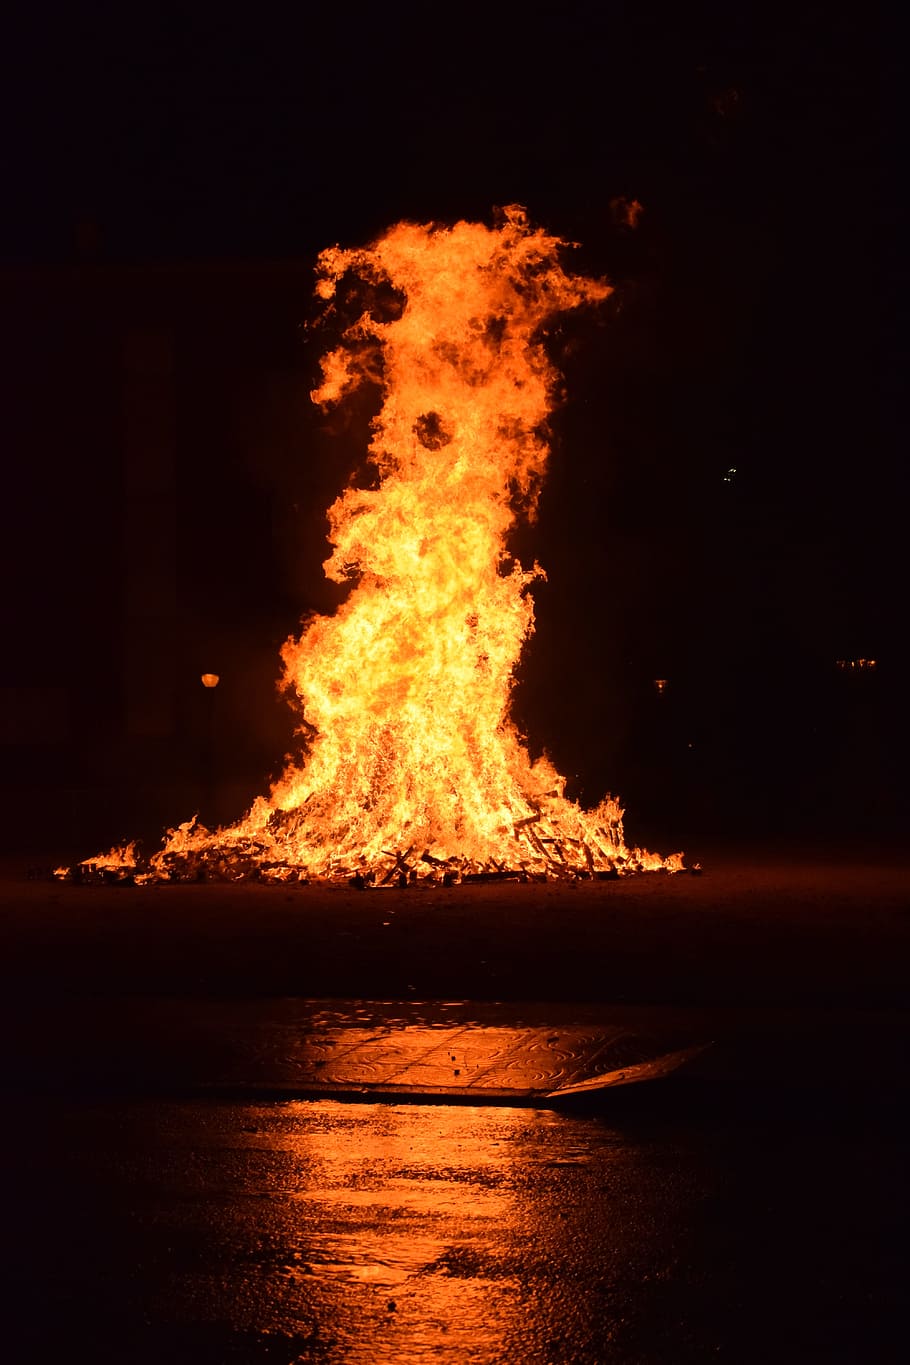 火, 床, 夜間, パーティー, レナ, 薪の燃焼, 炎, 花火, お祝い, 火-自然現象